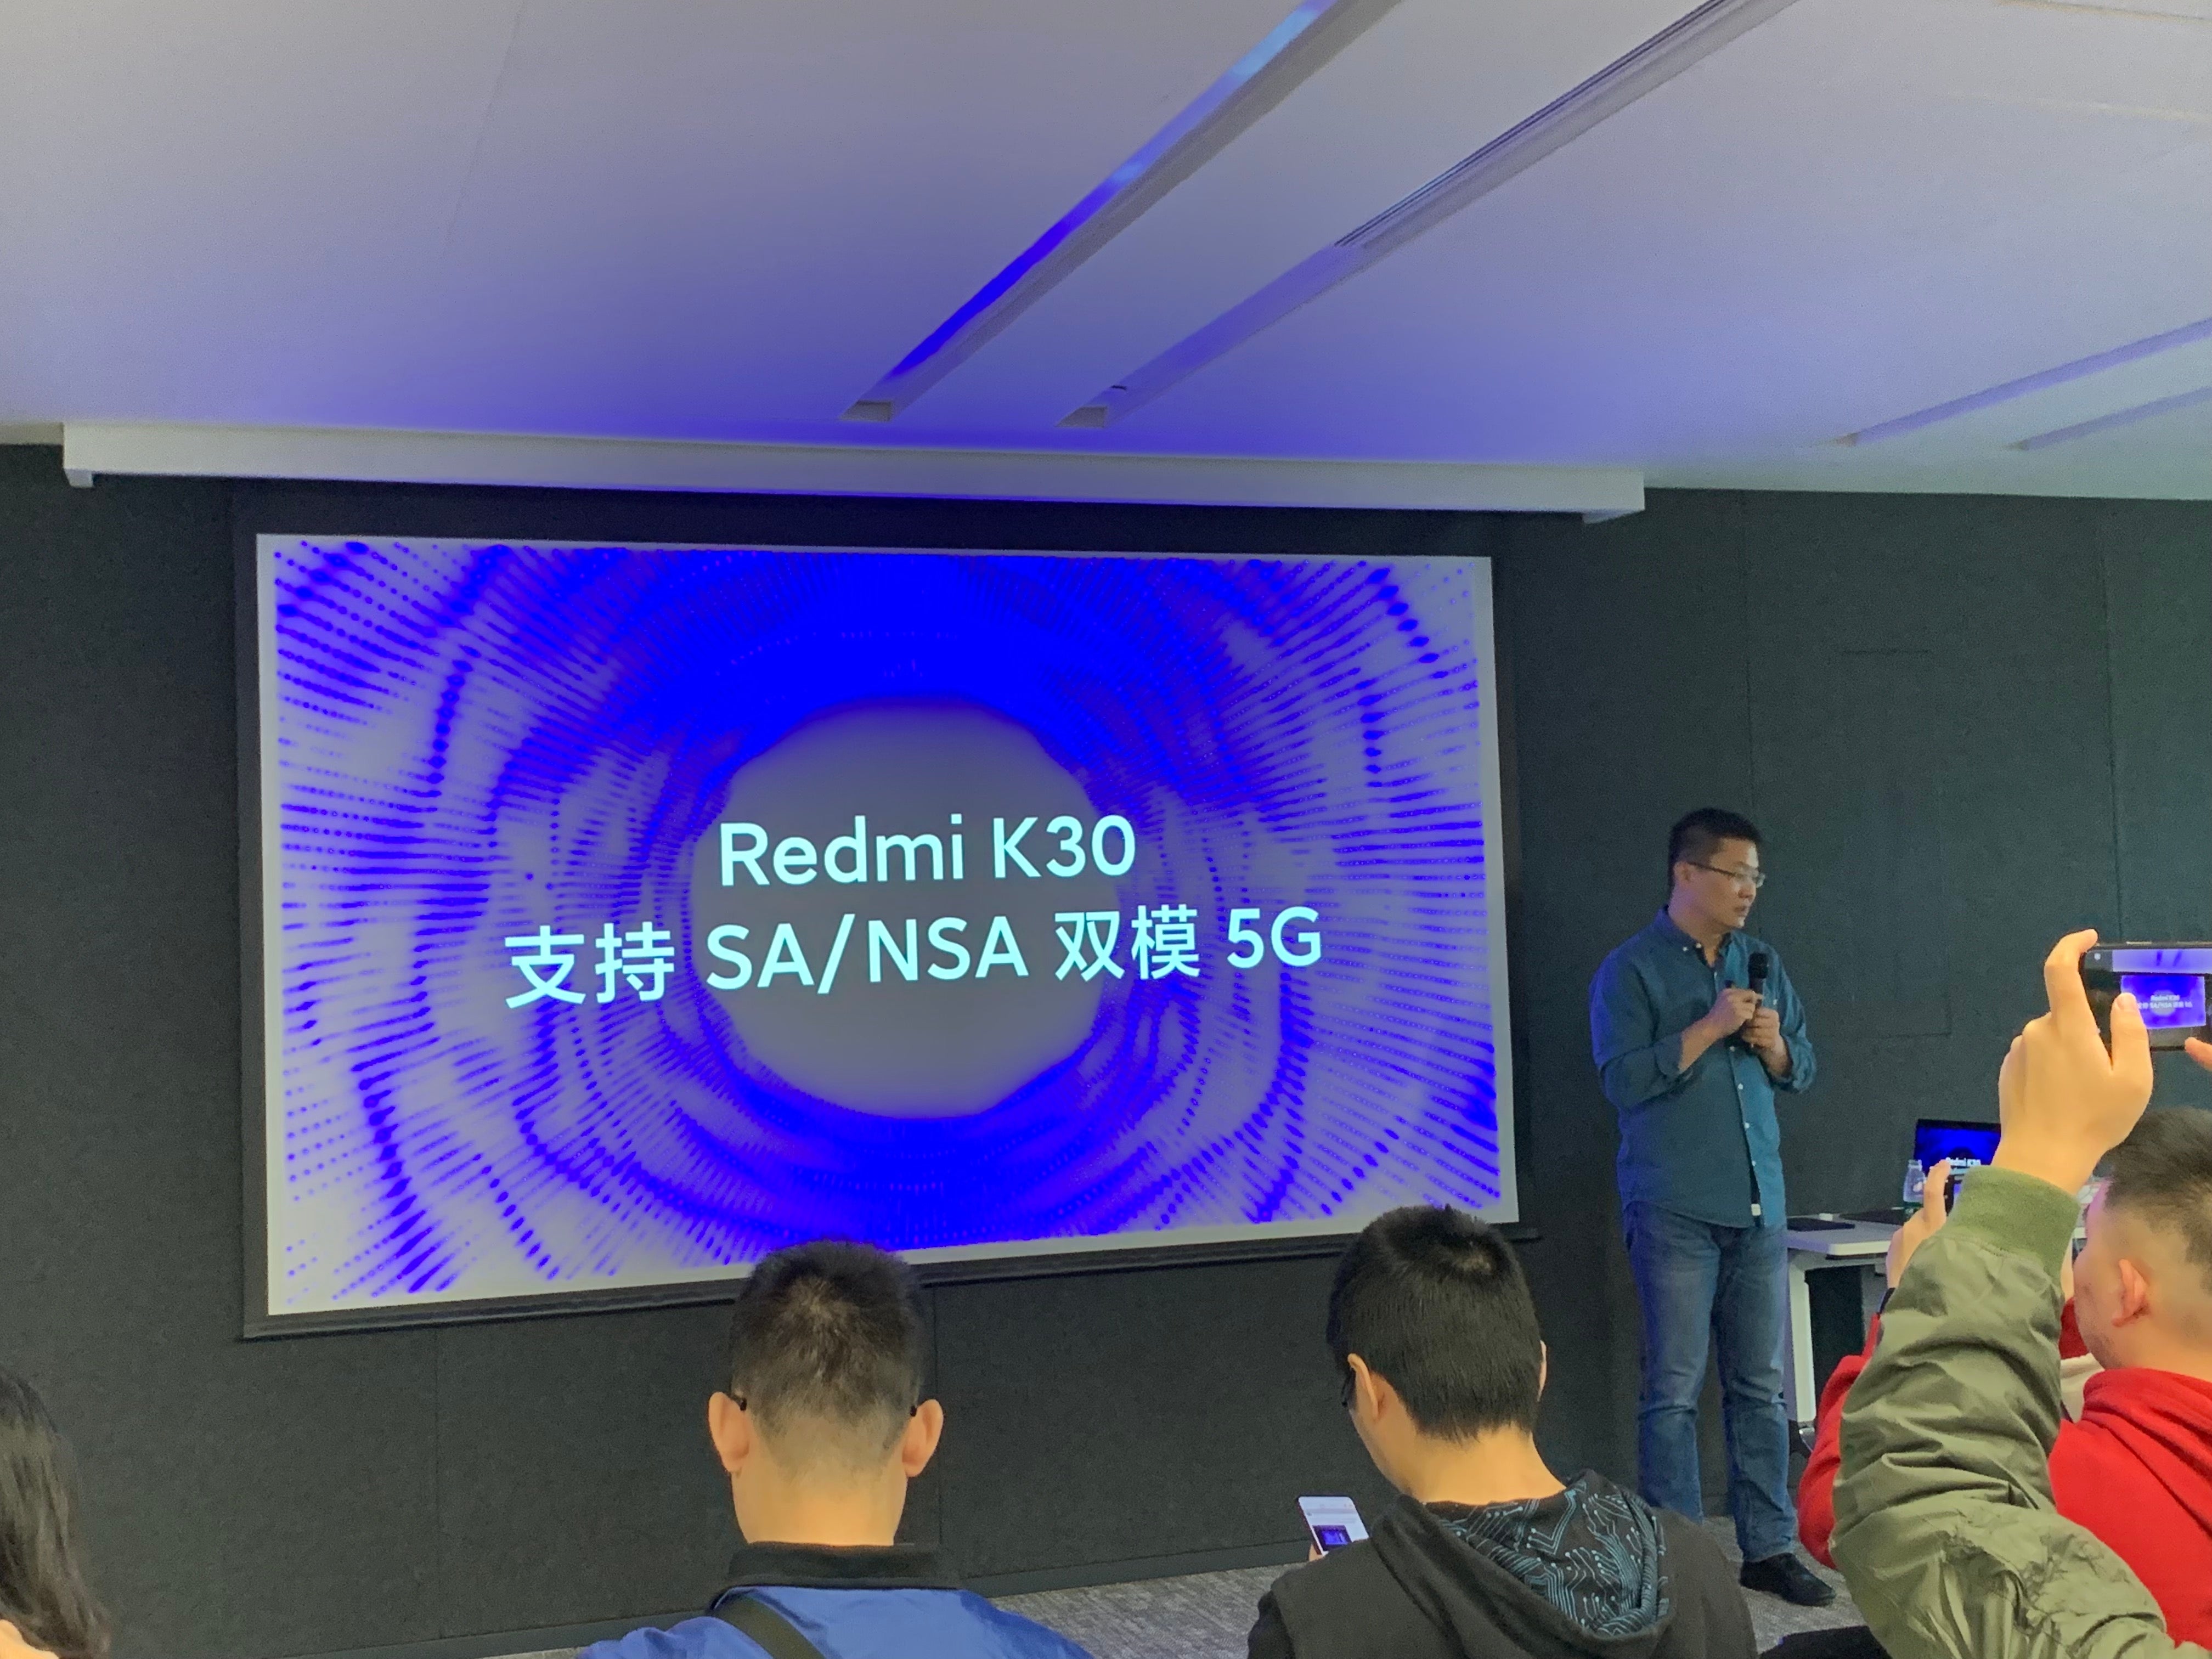 Lei Jun - CEO của
Xiaomi xác nhận Redmi K30 sẽ chính thức ra mắt vào tháng
12tới